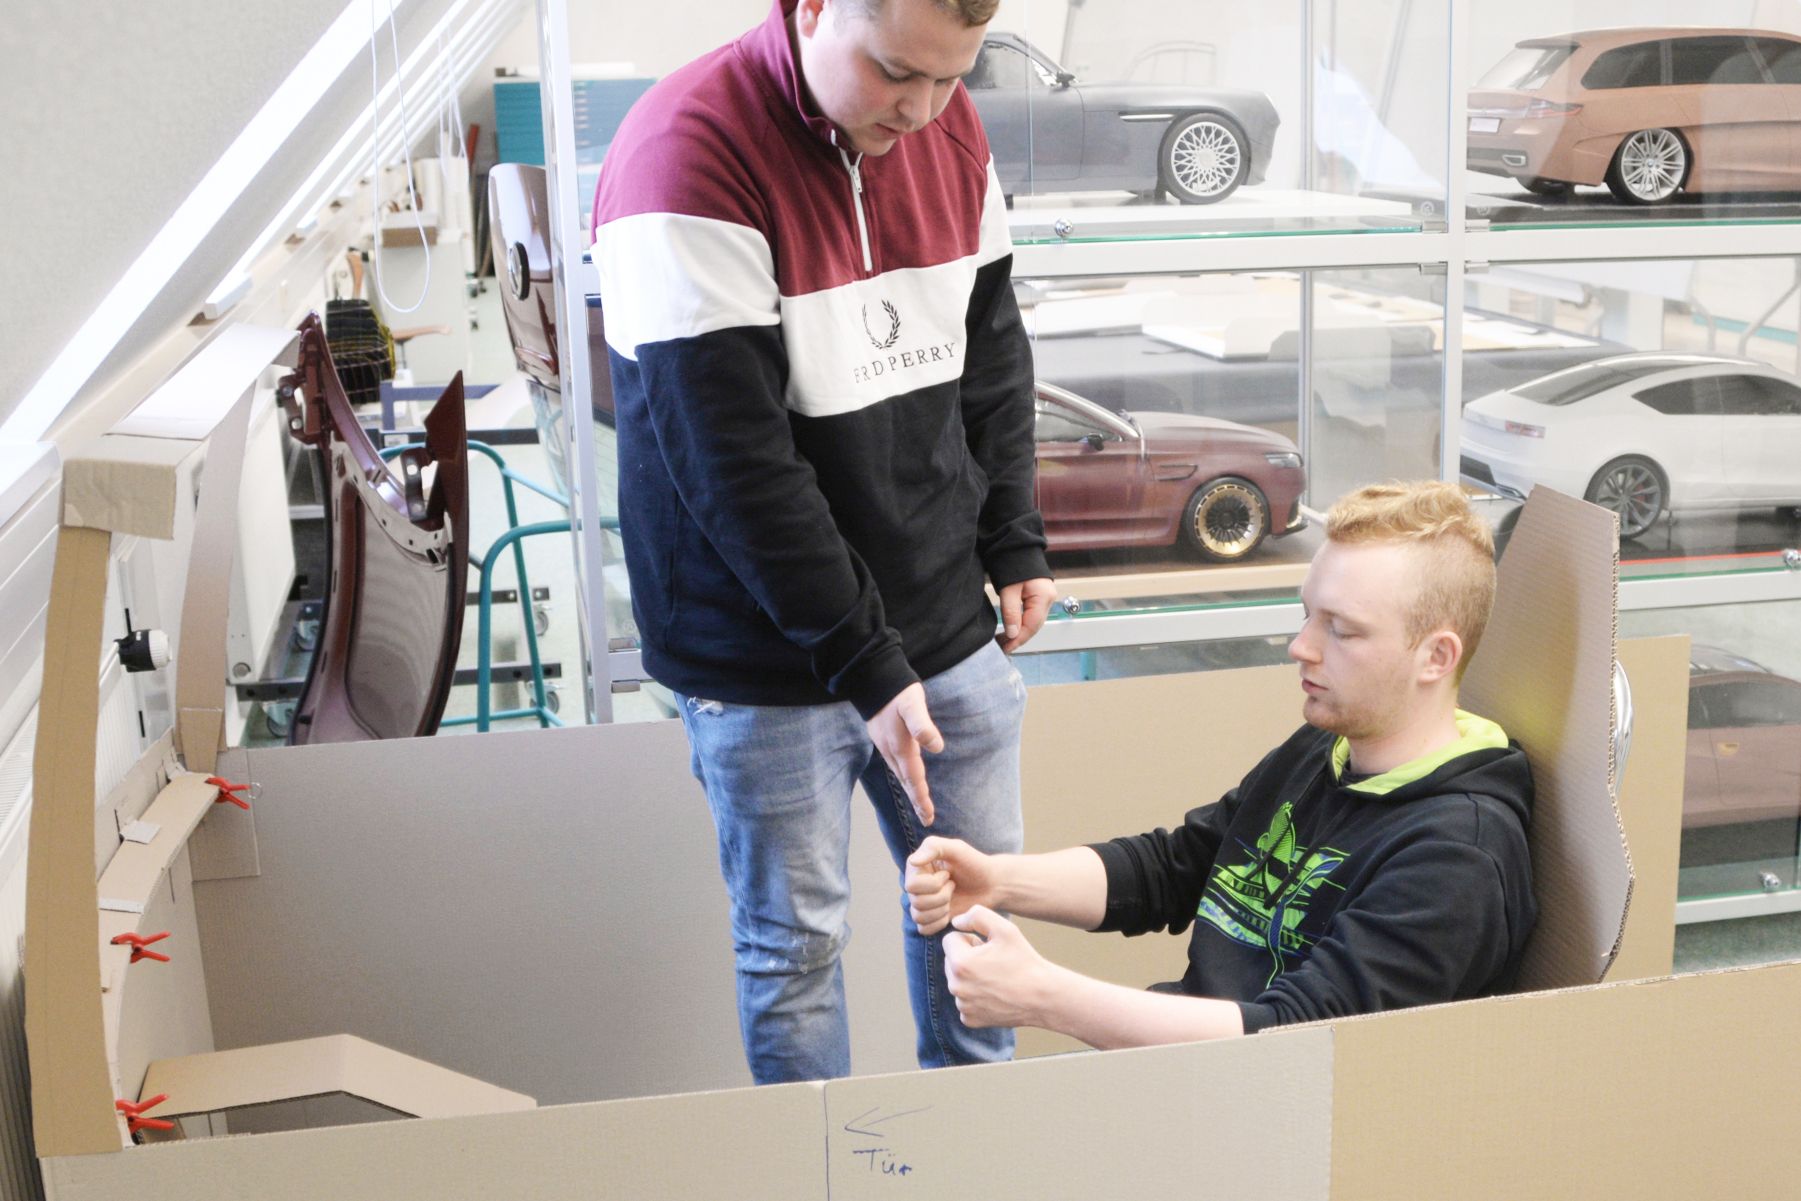 Foto: Zwei Studierende (einer sitzt, der andere steht) in einem KFZ-Modell aus Pappe.